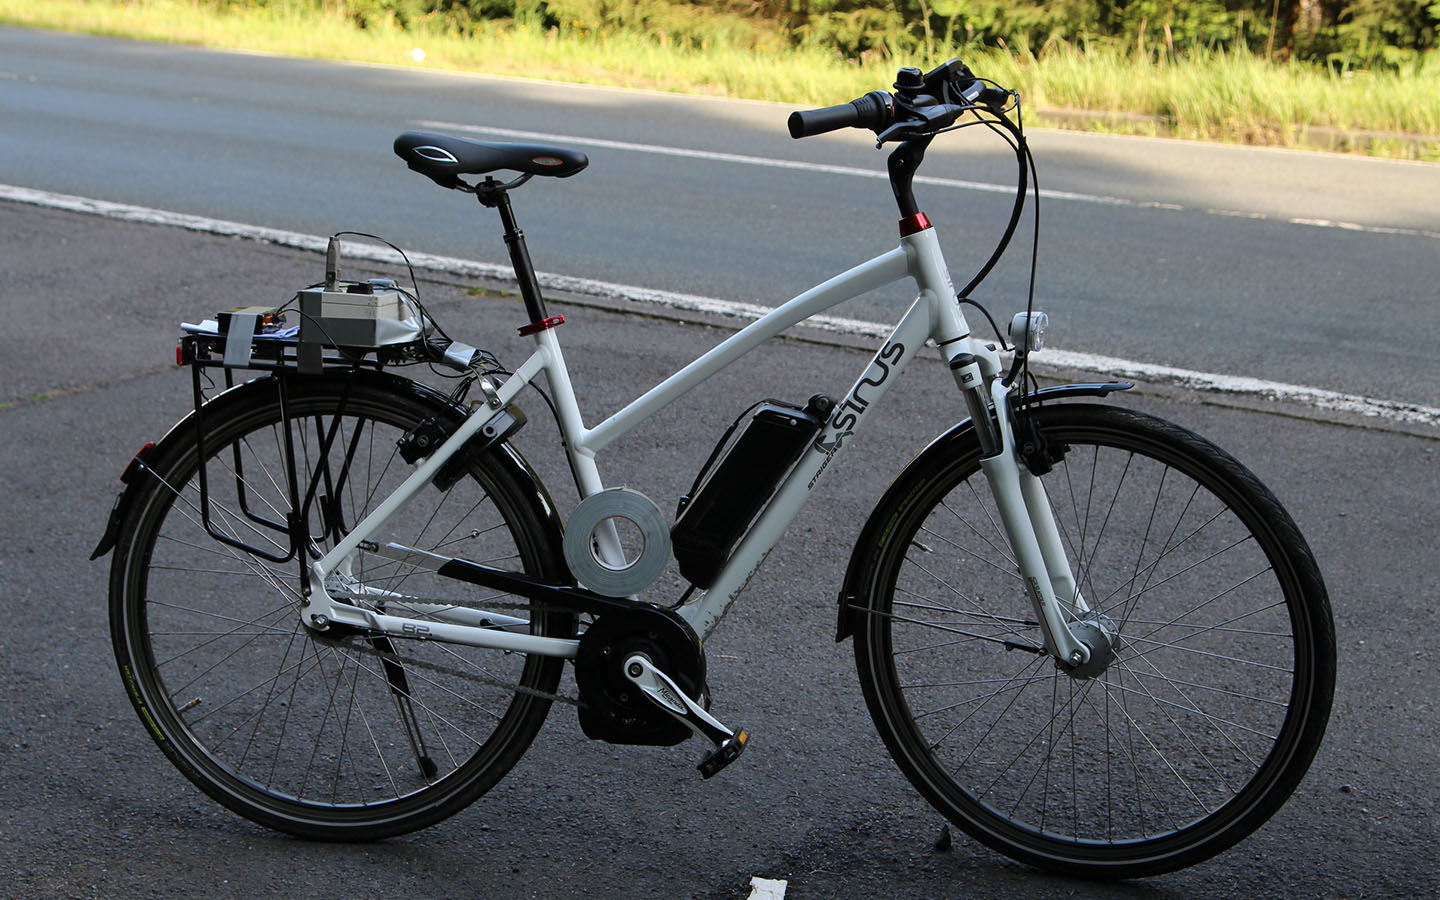 Fahrversuche mit einem E-Bike zur Untersuchung der Schwingungseigenschaften bei höheren Geschwindigkeiten.